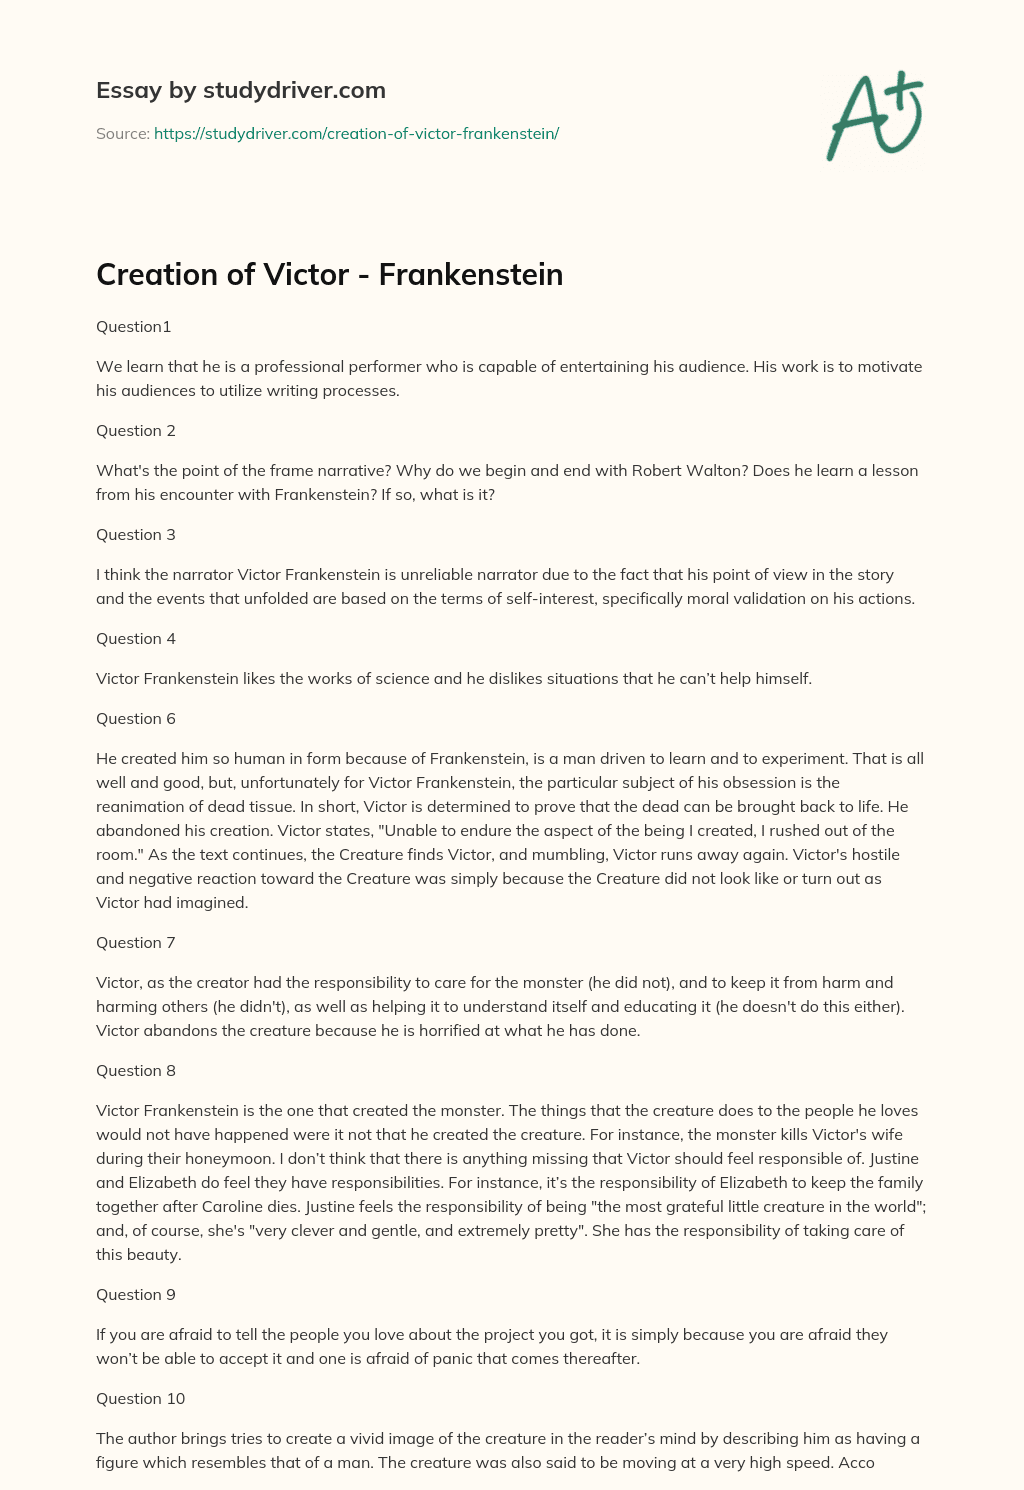 Creation of Victor – Frankenstein essay